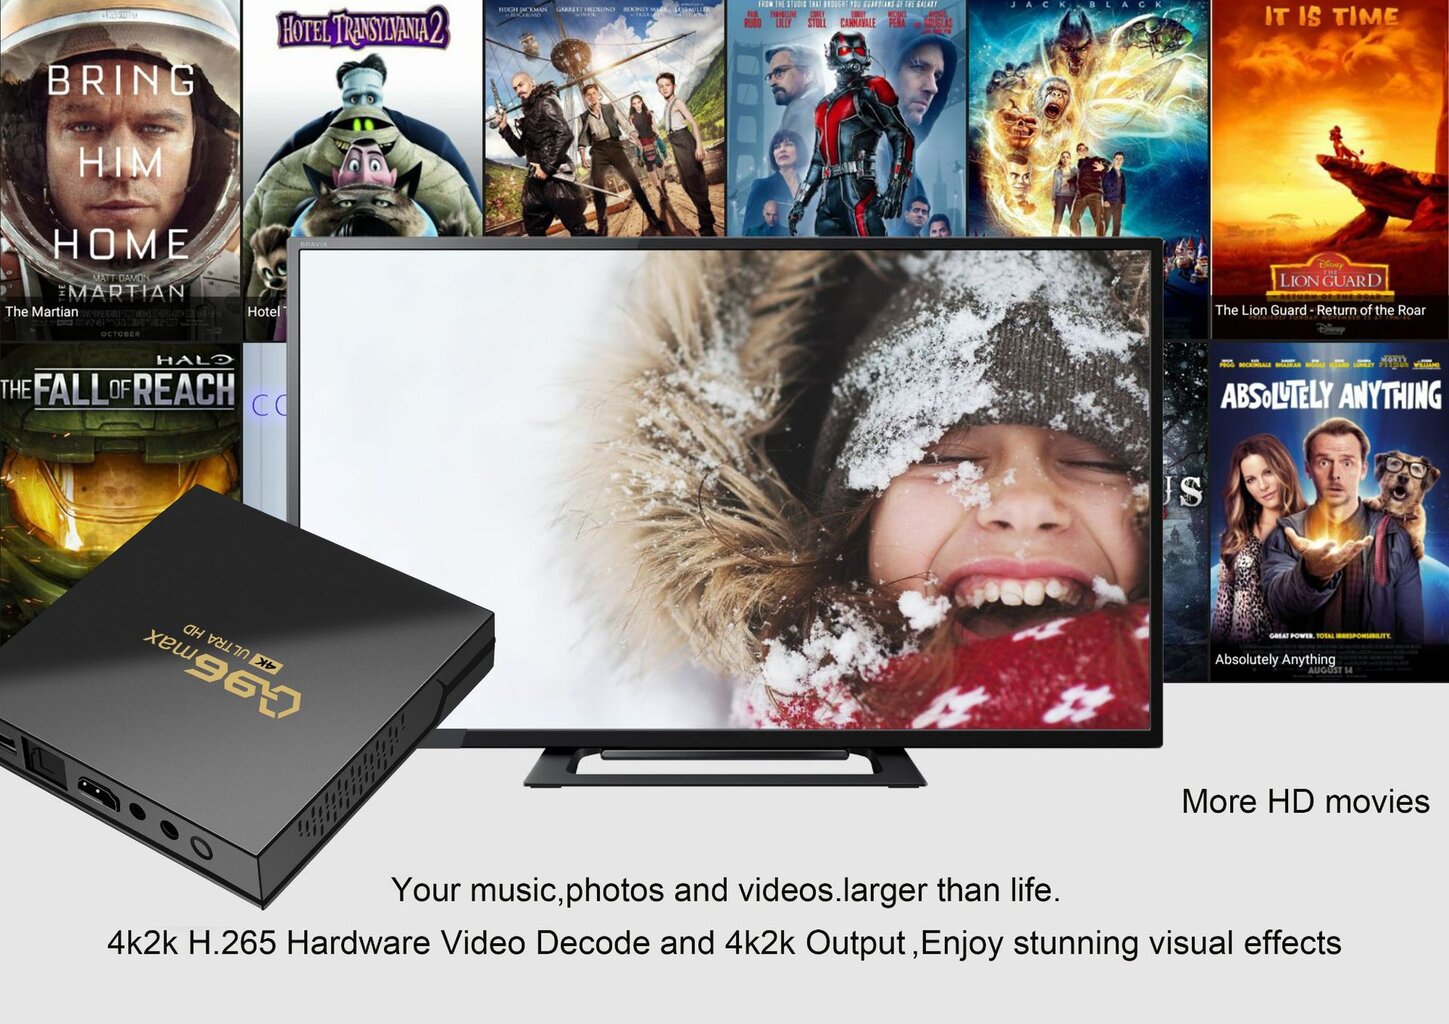 Q96 Max kaina ir informacija | TV imtuvai (priedėliai) | pigu.lt